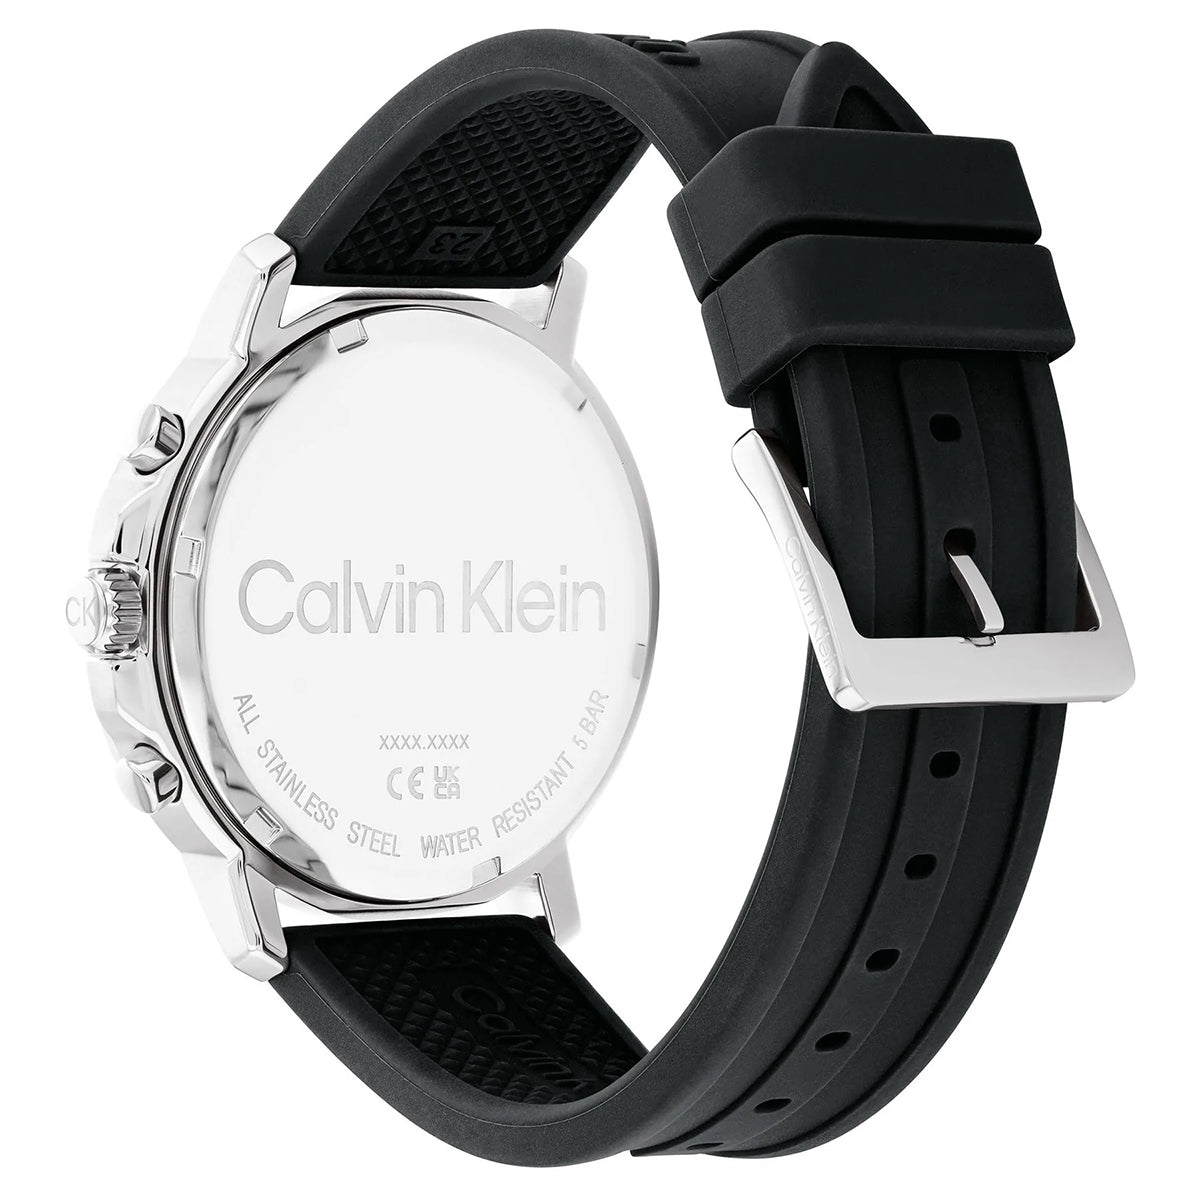 Calvin Klein - Gauge - 25200072